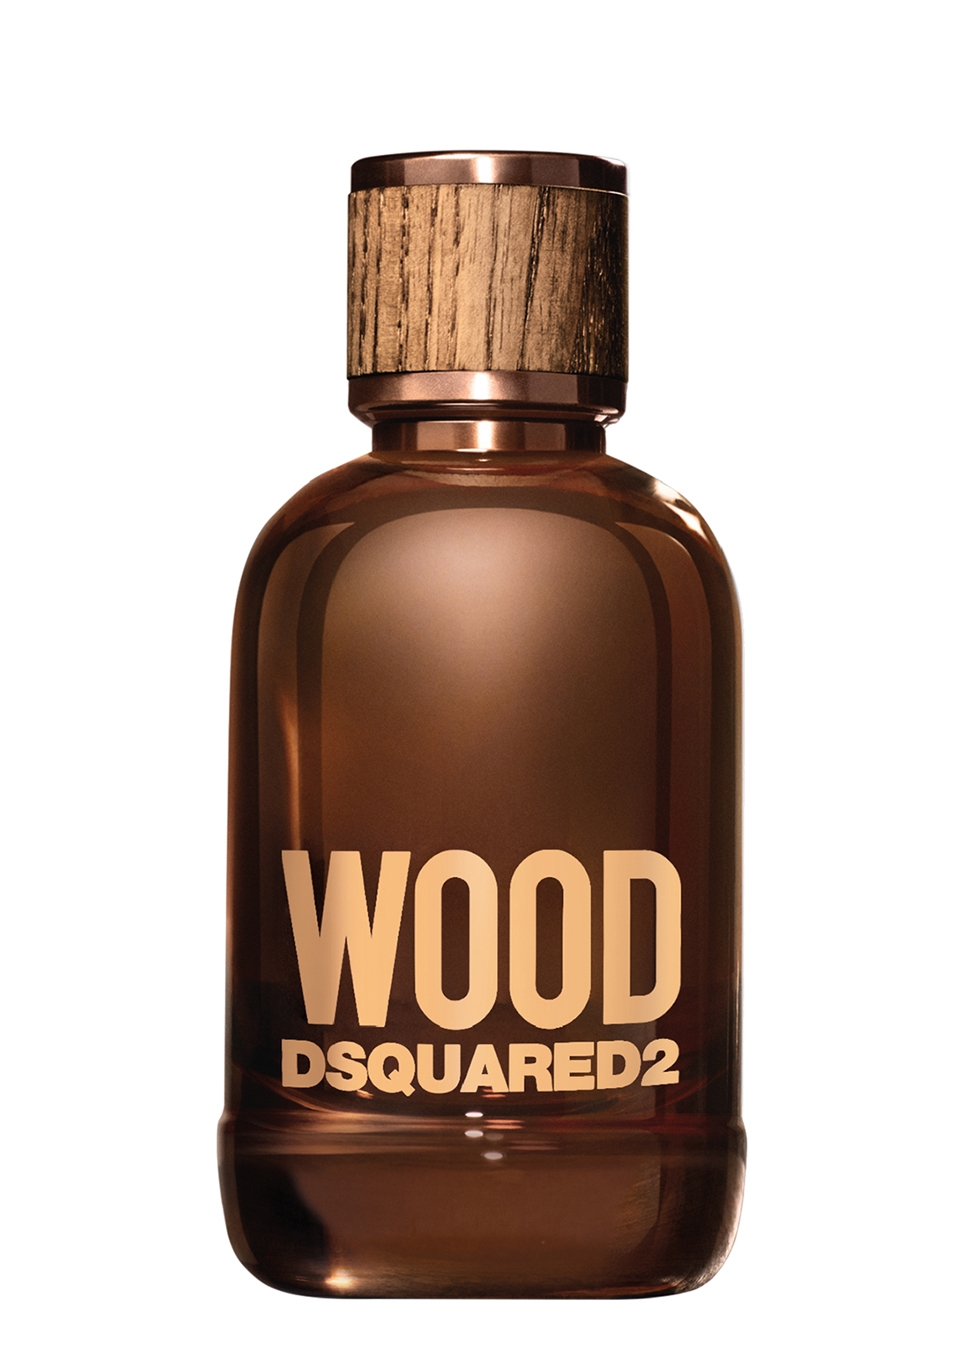 dsquared2 wood